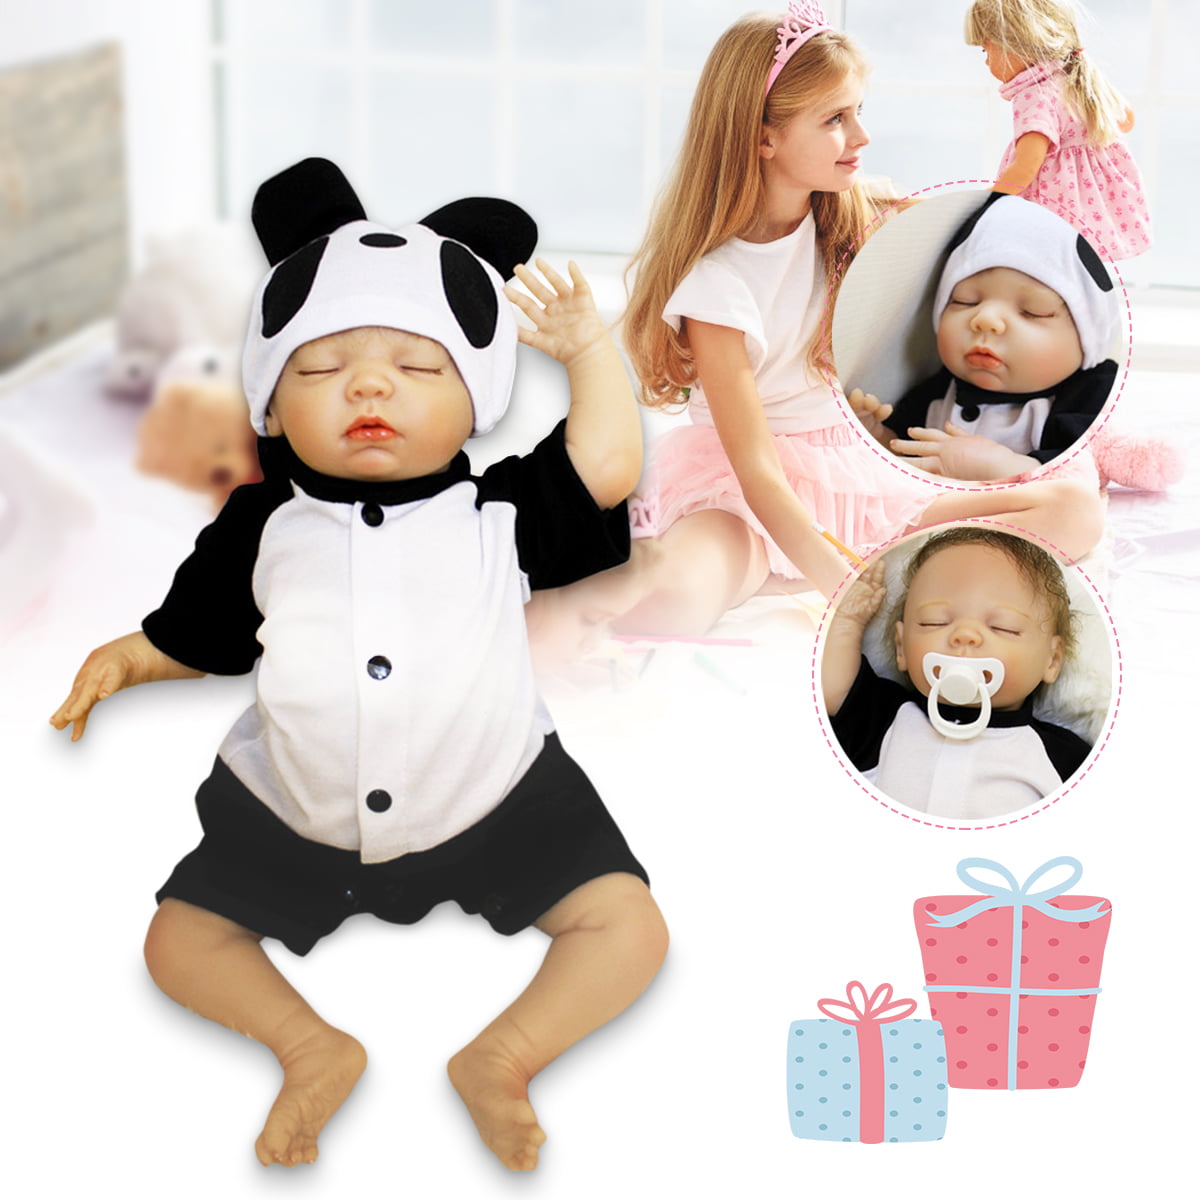 HGCY 55CM 21.6 Nurturing Dolls Lifelike Soft Bodied Reborn Baby Correct Newborn Sleeping Girl Dolls Full Silicone Body